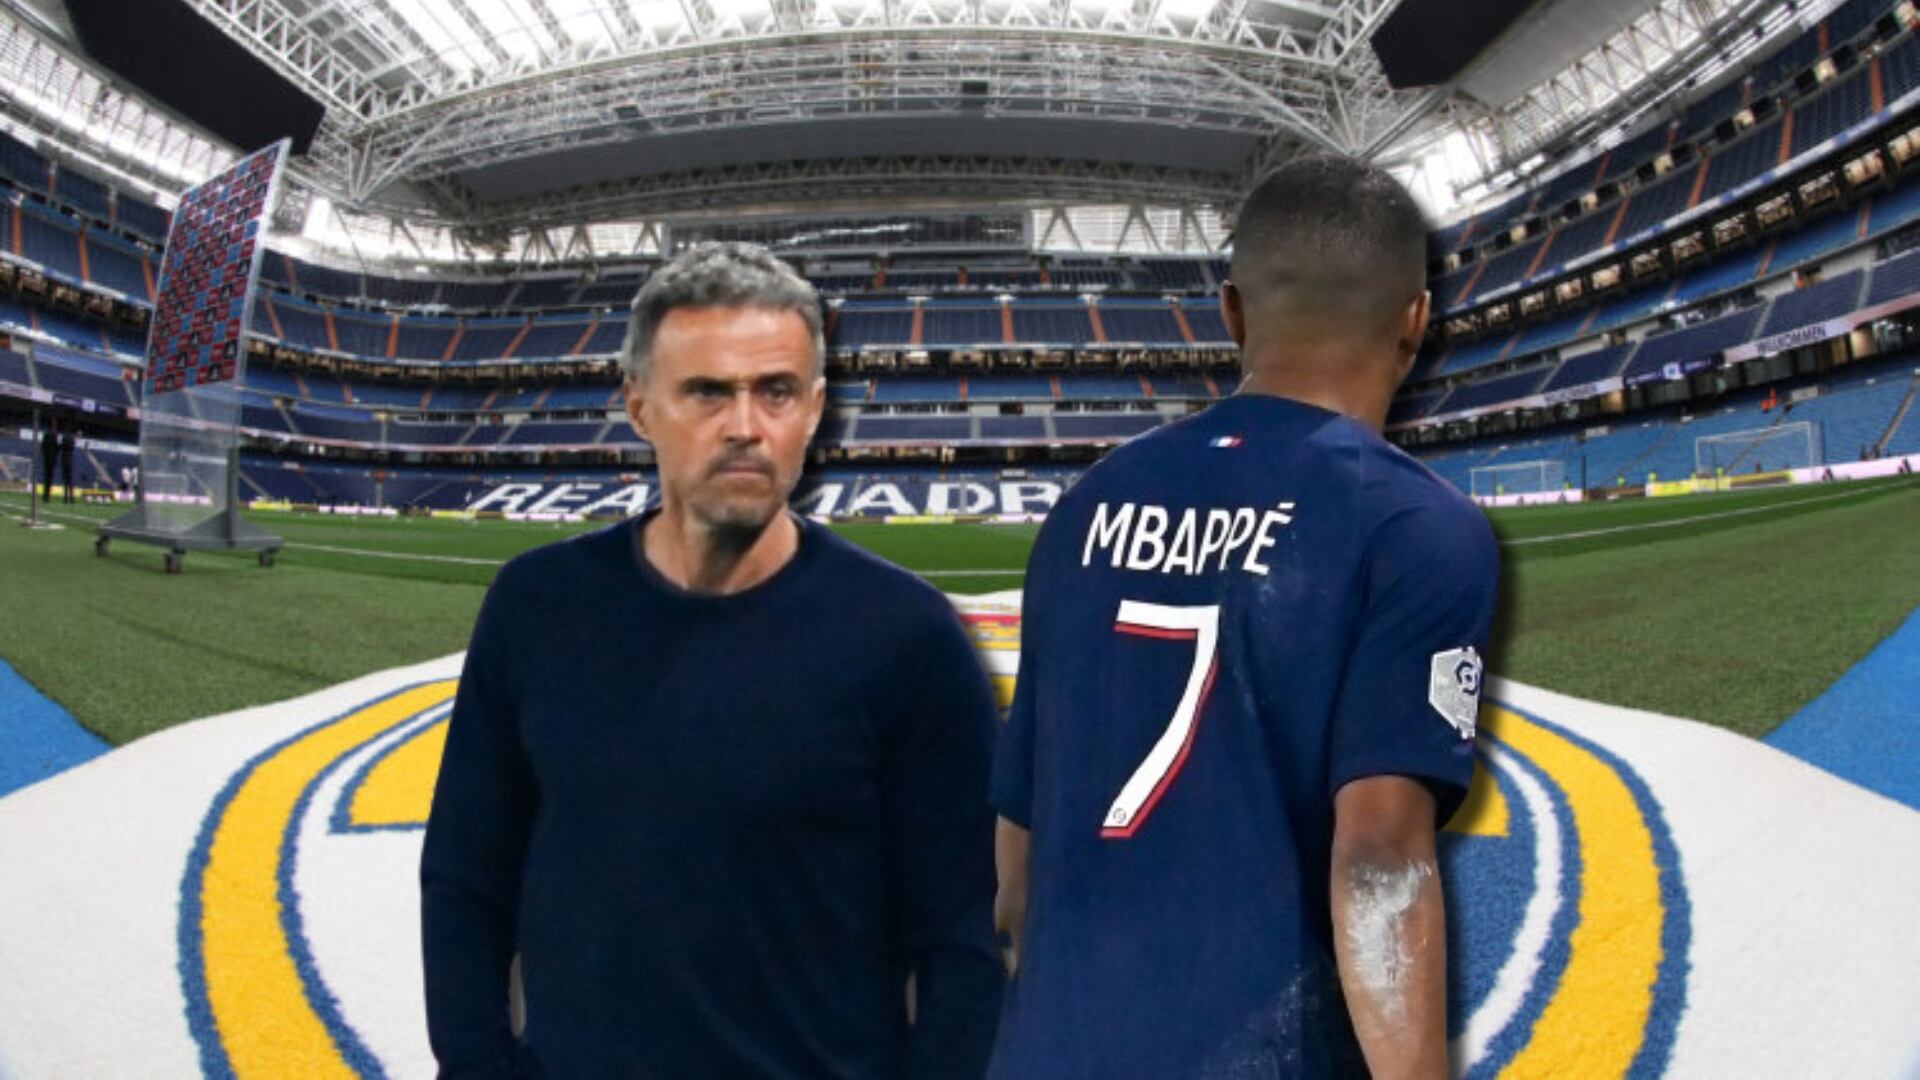 (VIDEO) Le dijeron que Mbappé se va al Madrid y mira cómo reaccionó Luis Enrique